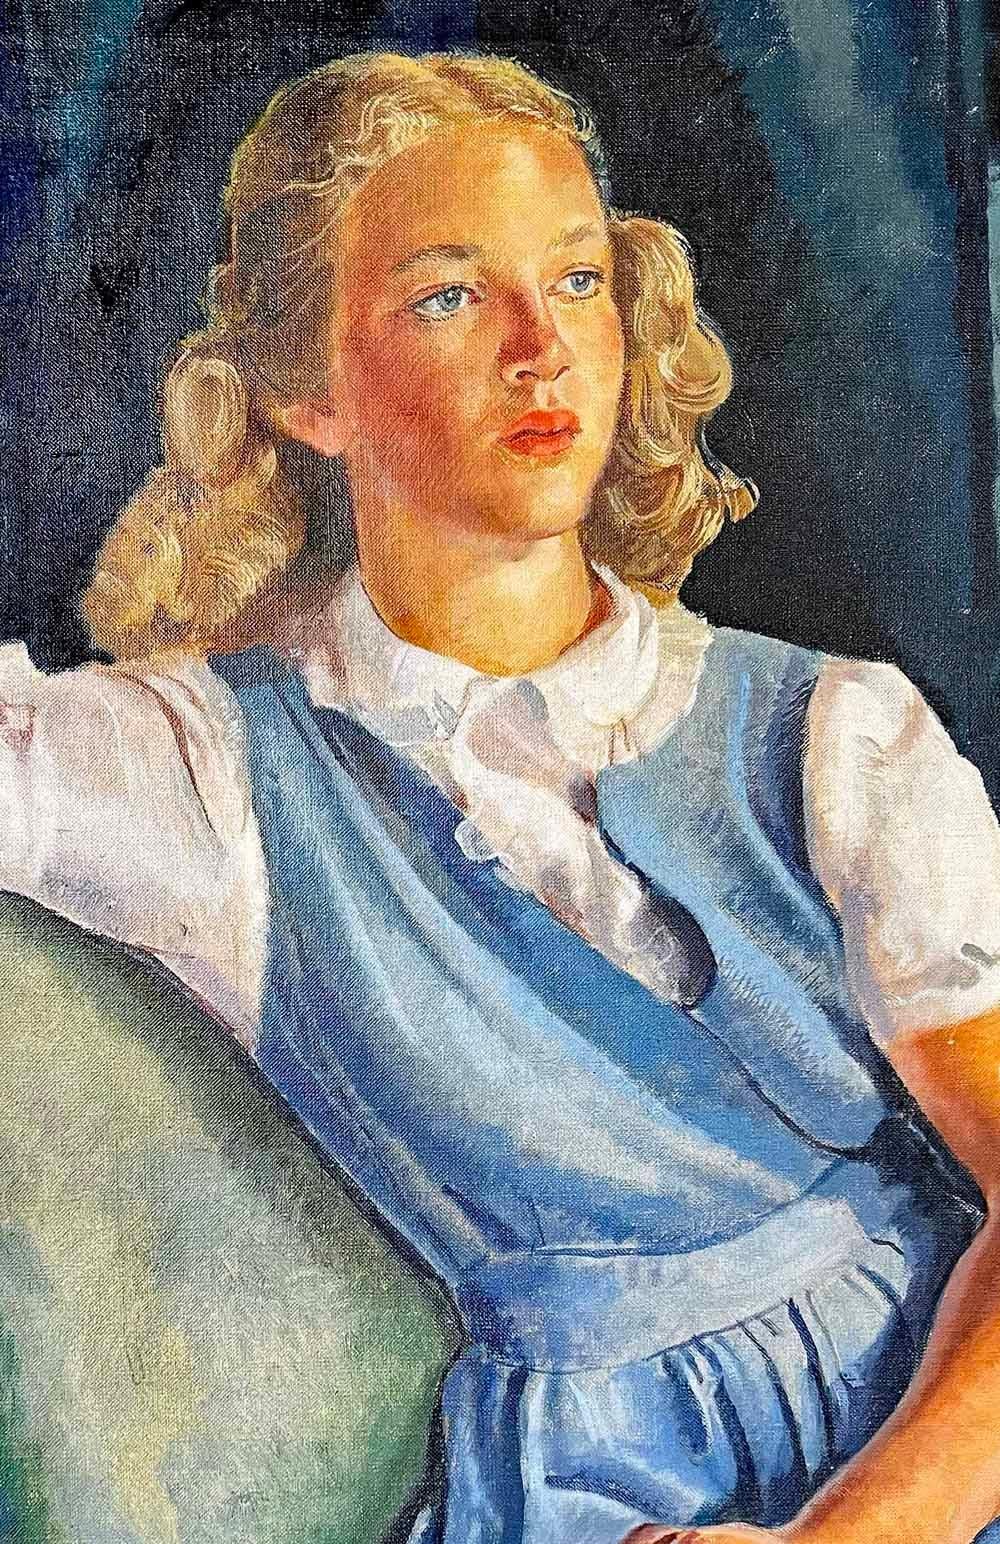 1940s blonde